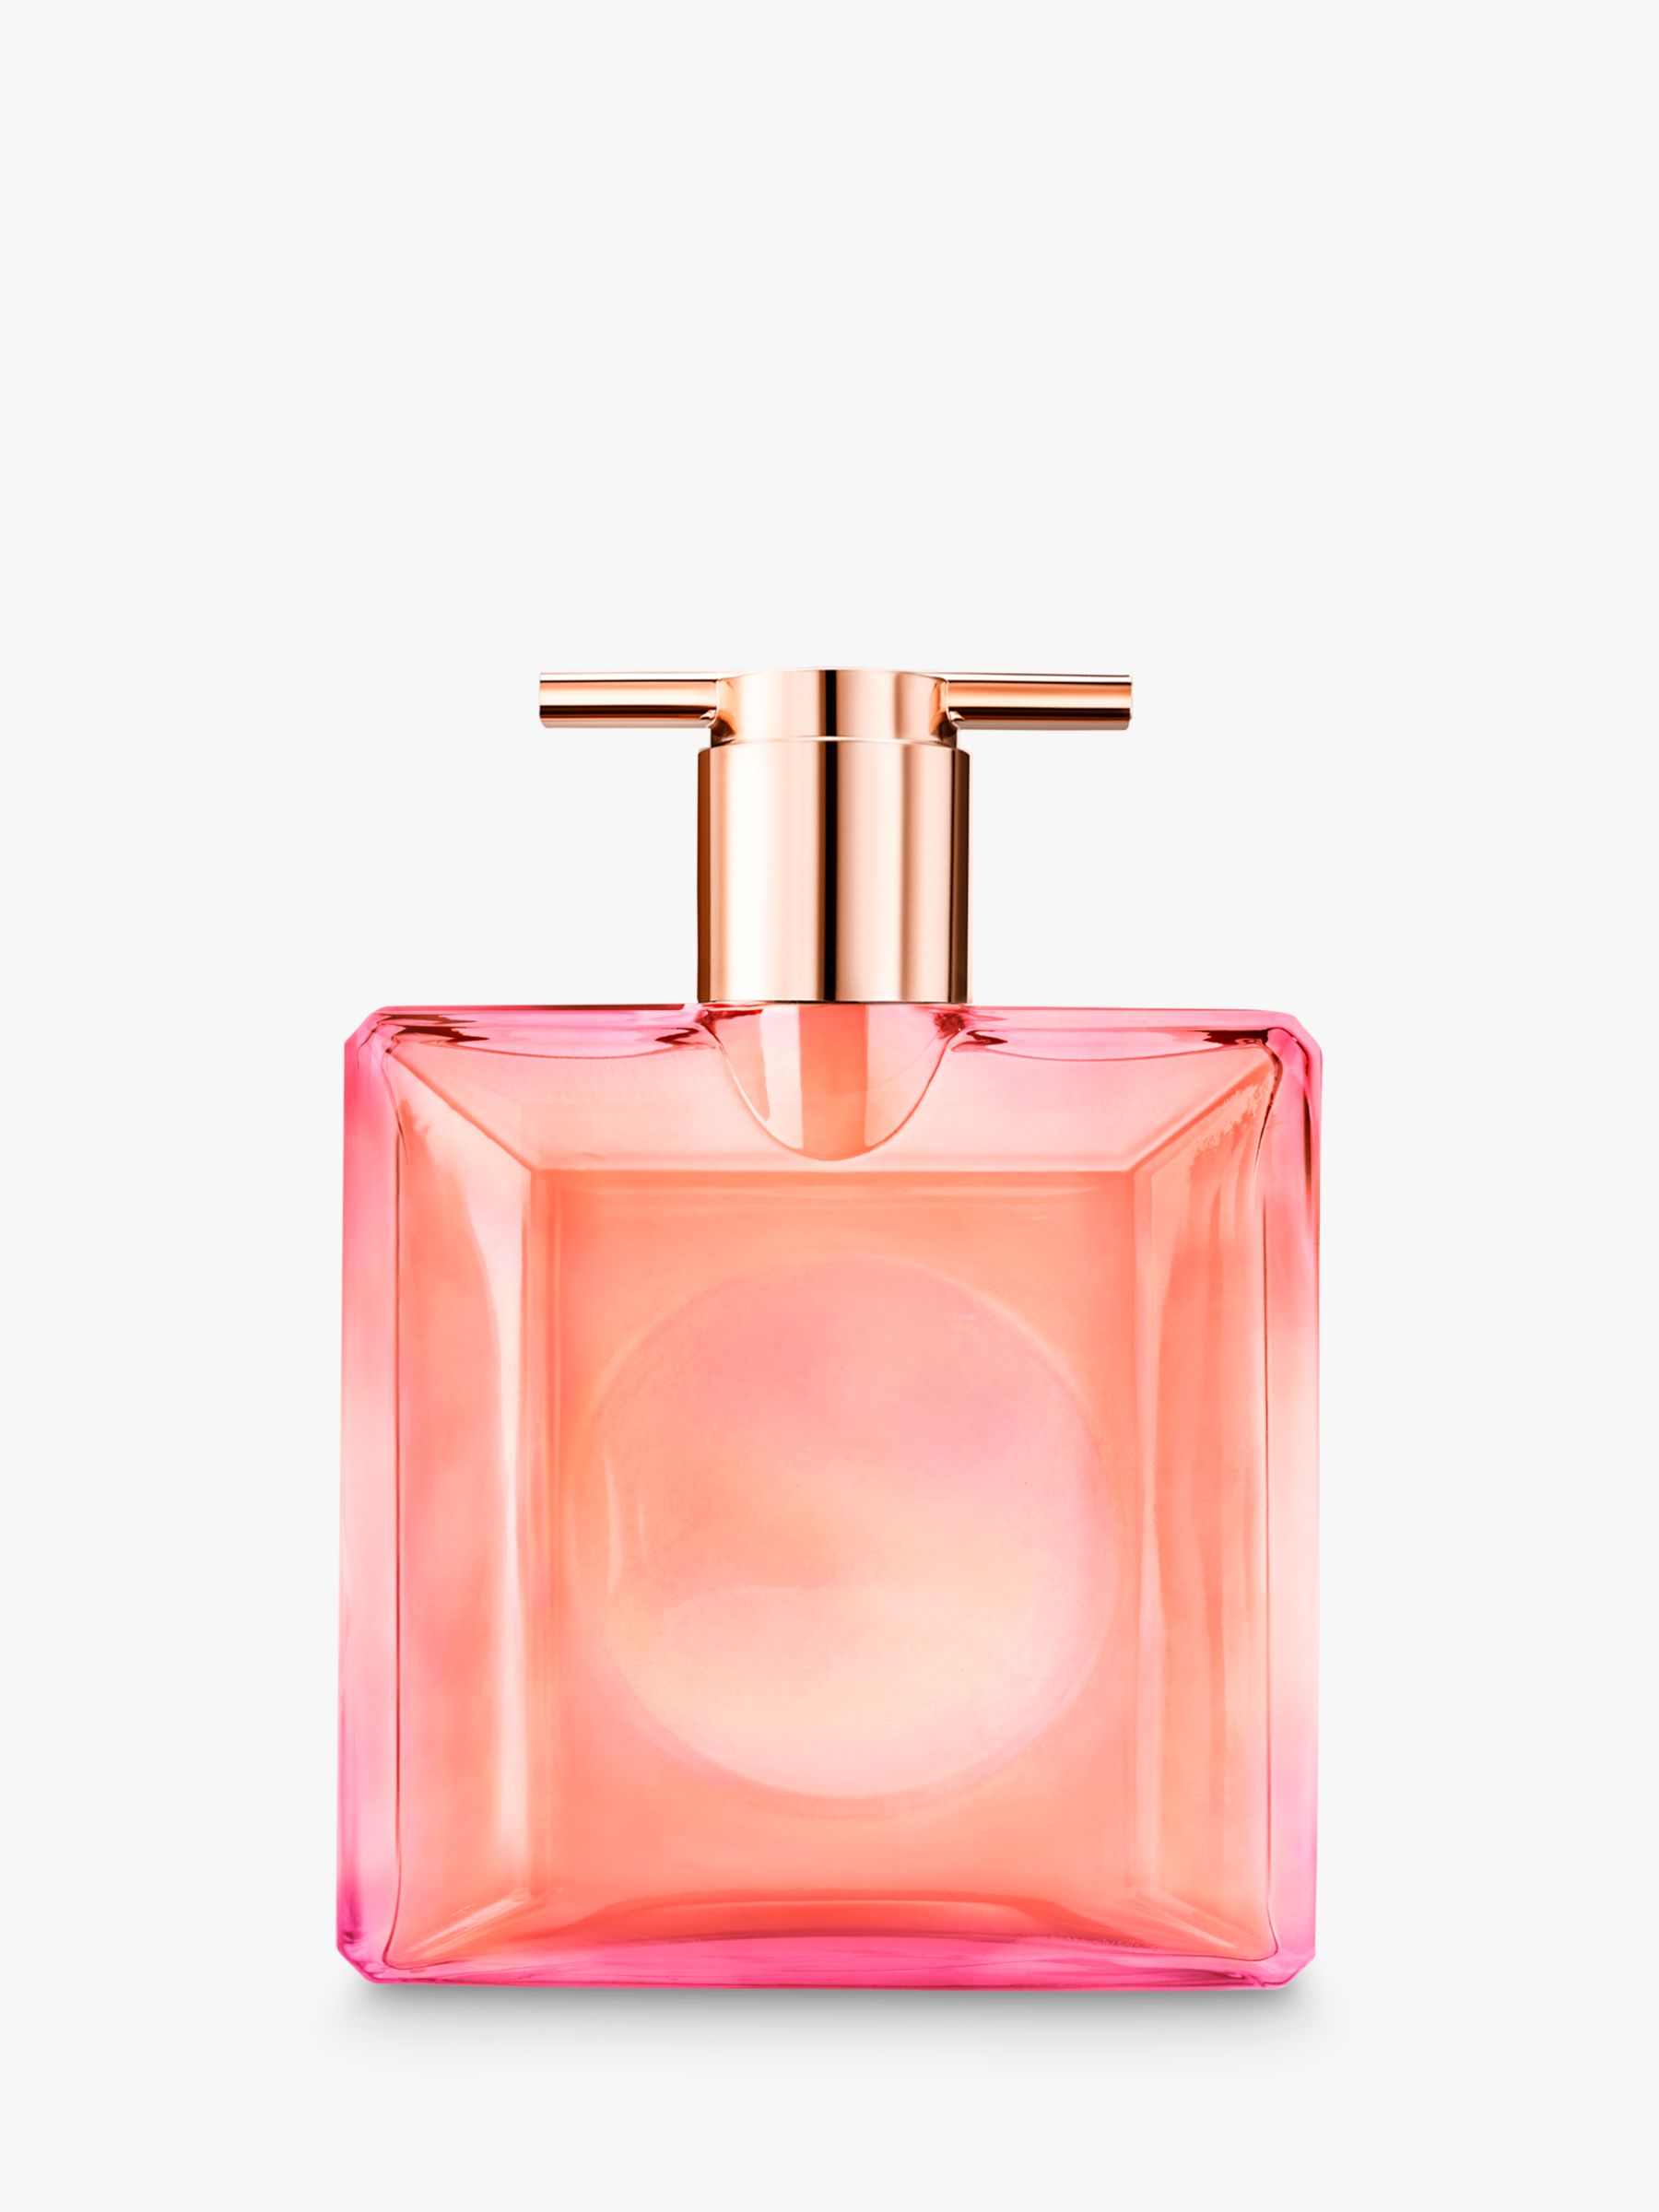 Lancôme Idôle Nectar Eau de Parfum, 25ml